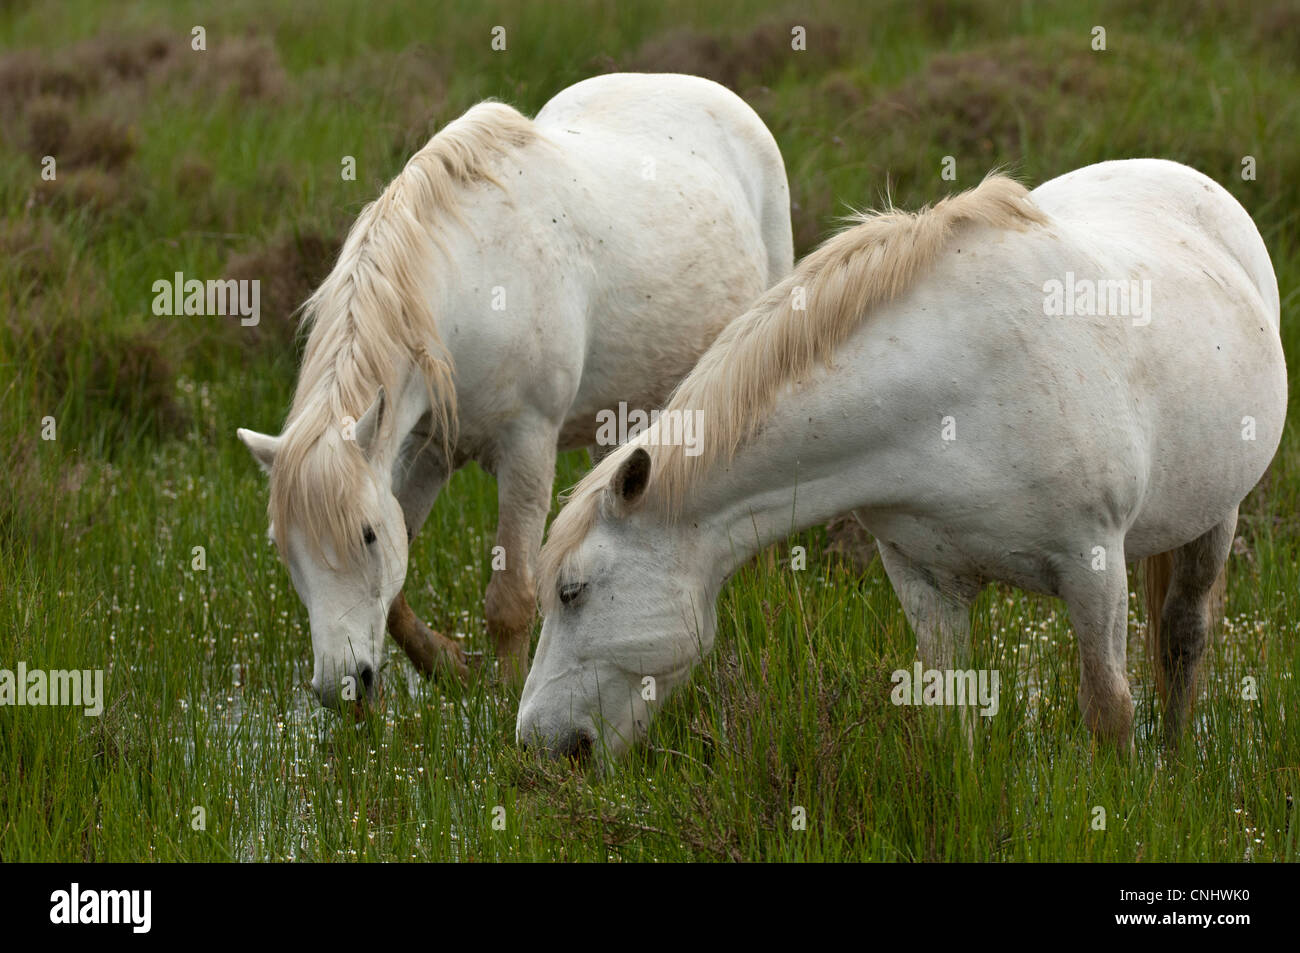 Le pâturage chevaux camargue dans une zone humide, Camargue, France Banque D'Images